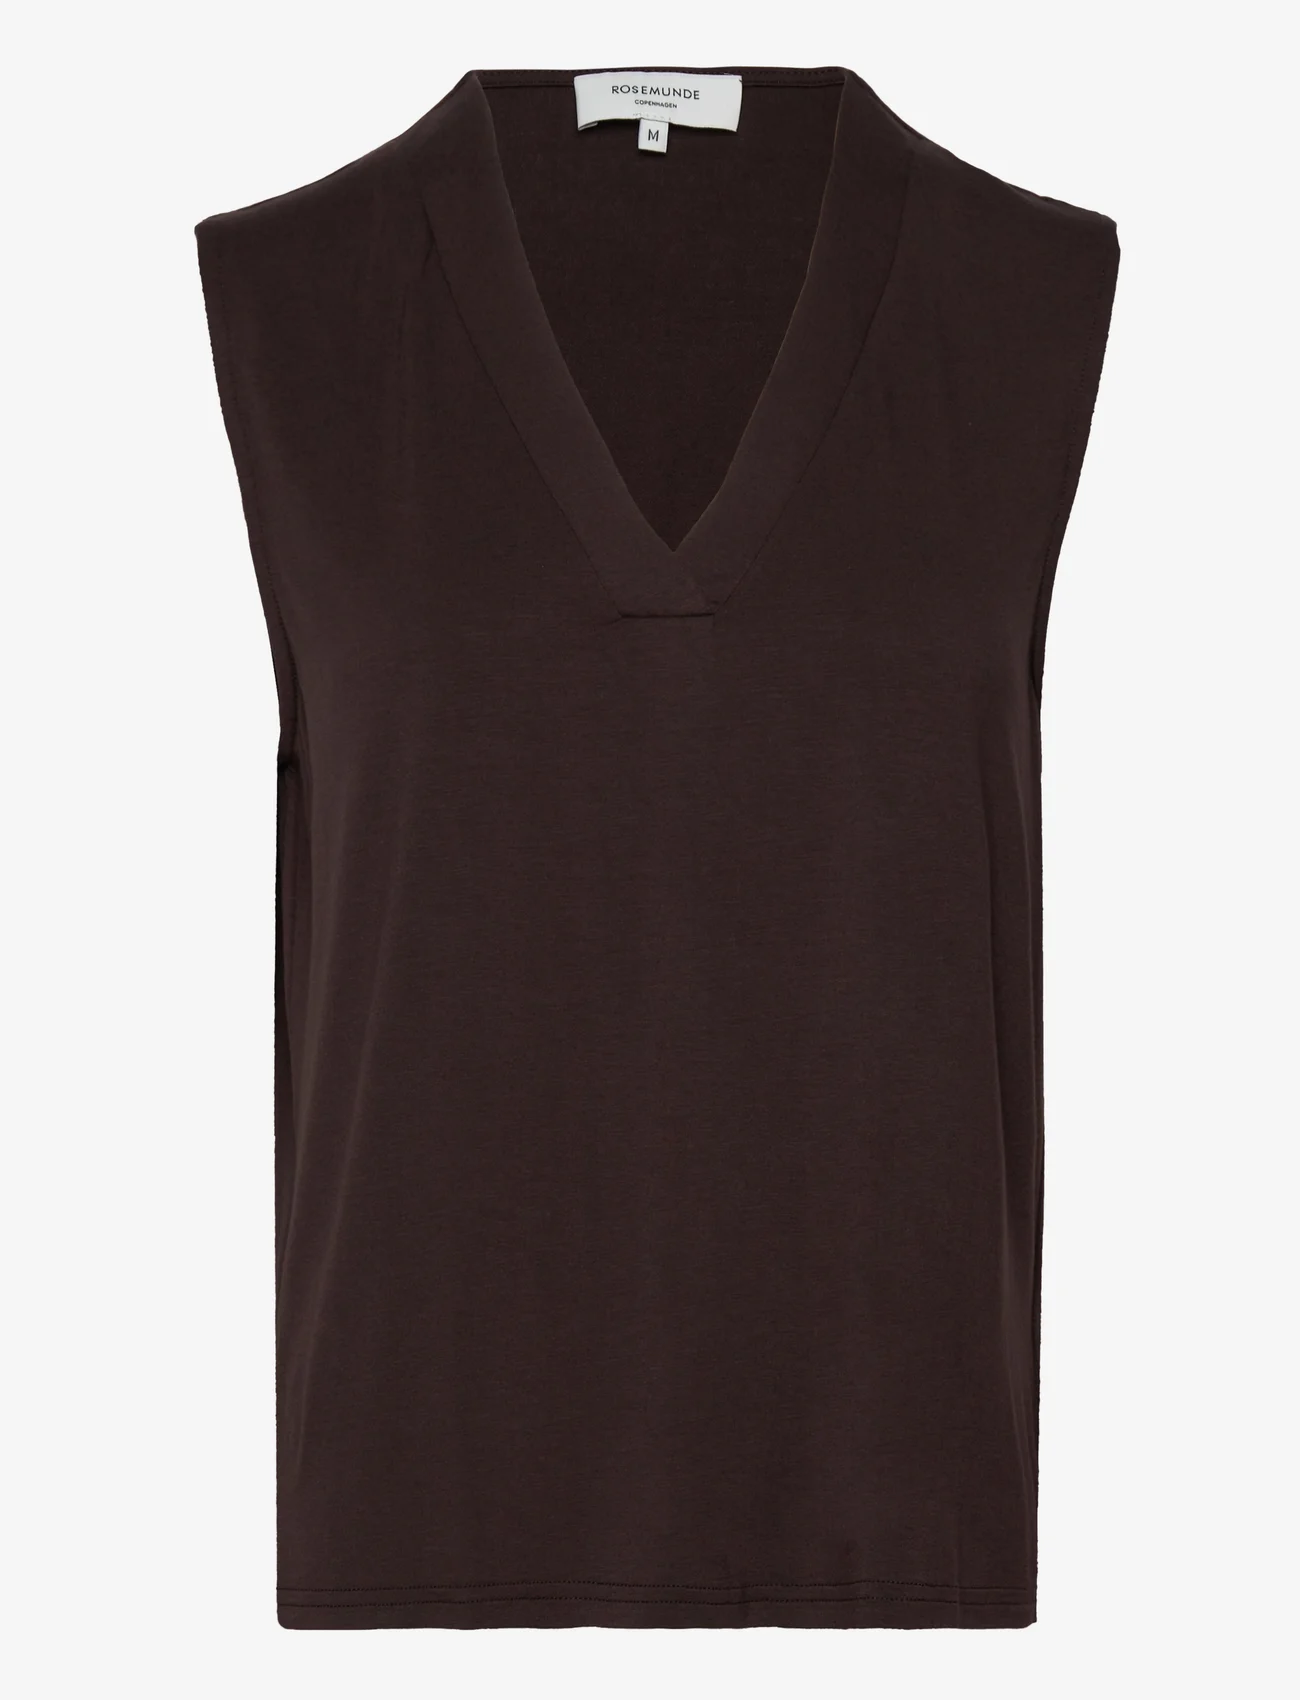 Rosemunde - Top - bluzki bez rękawów - black brown - 0